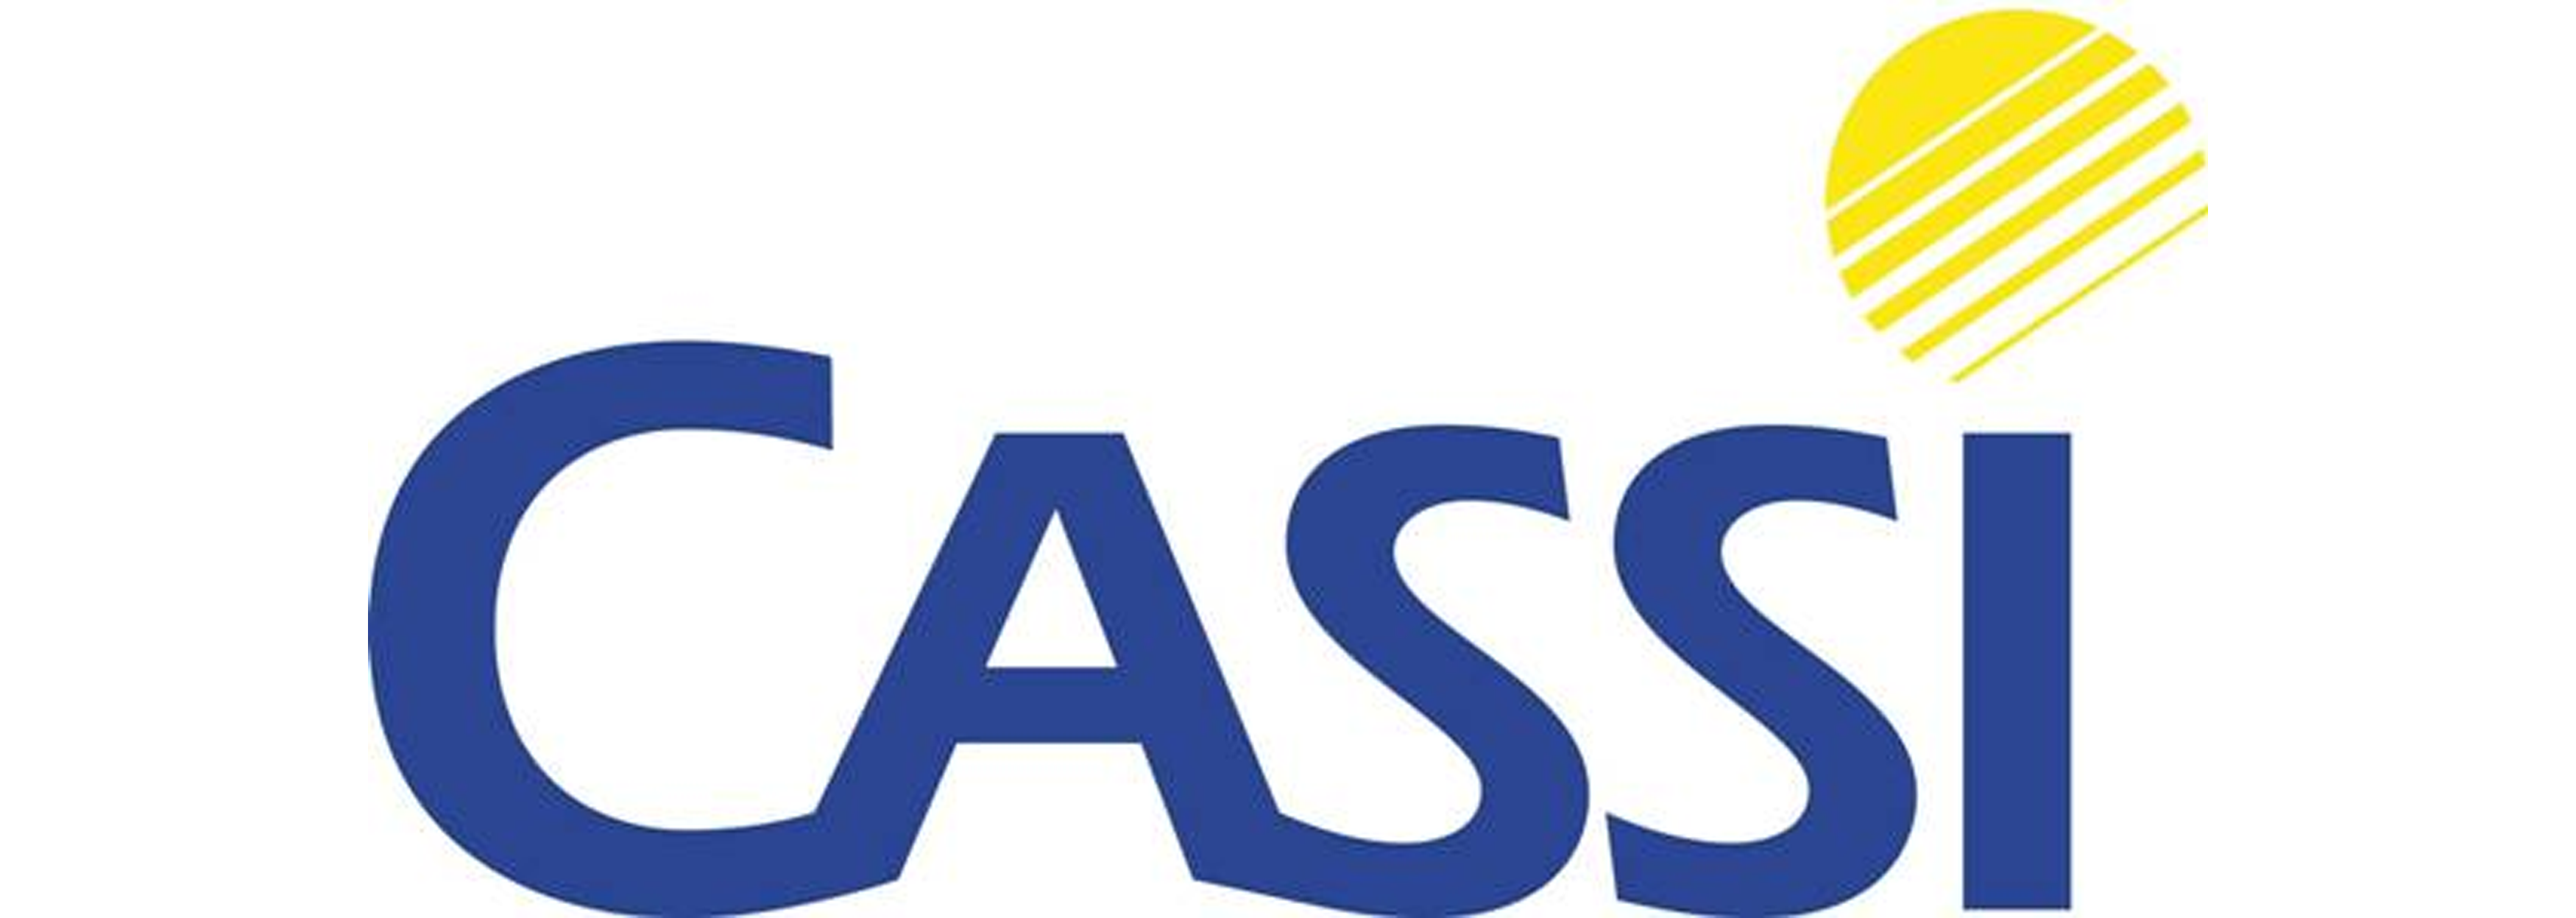 Cassi-logo